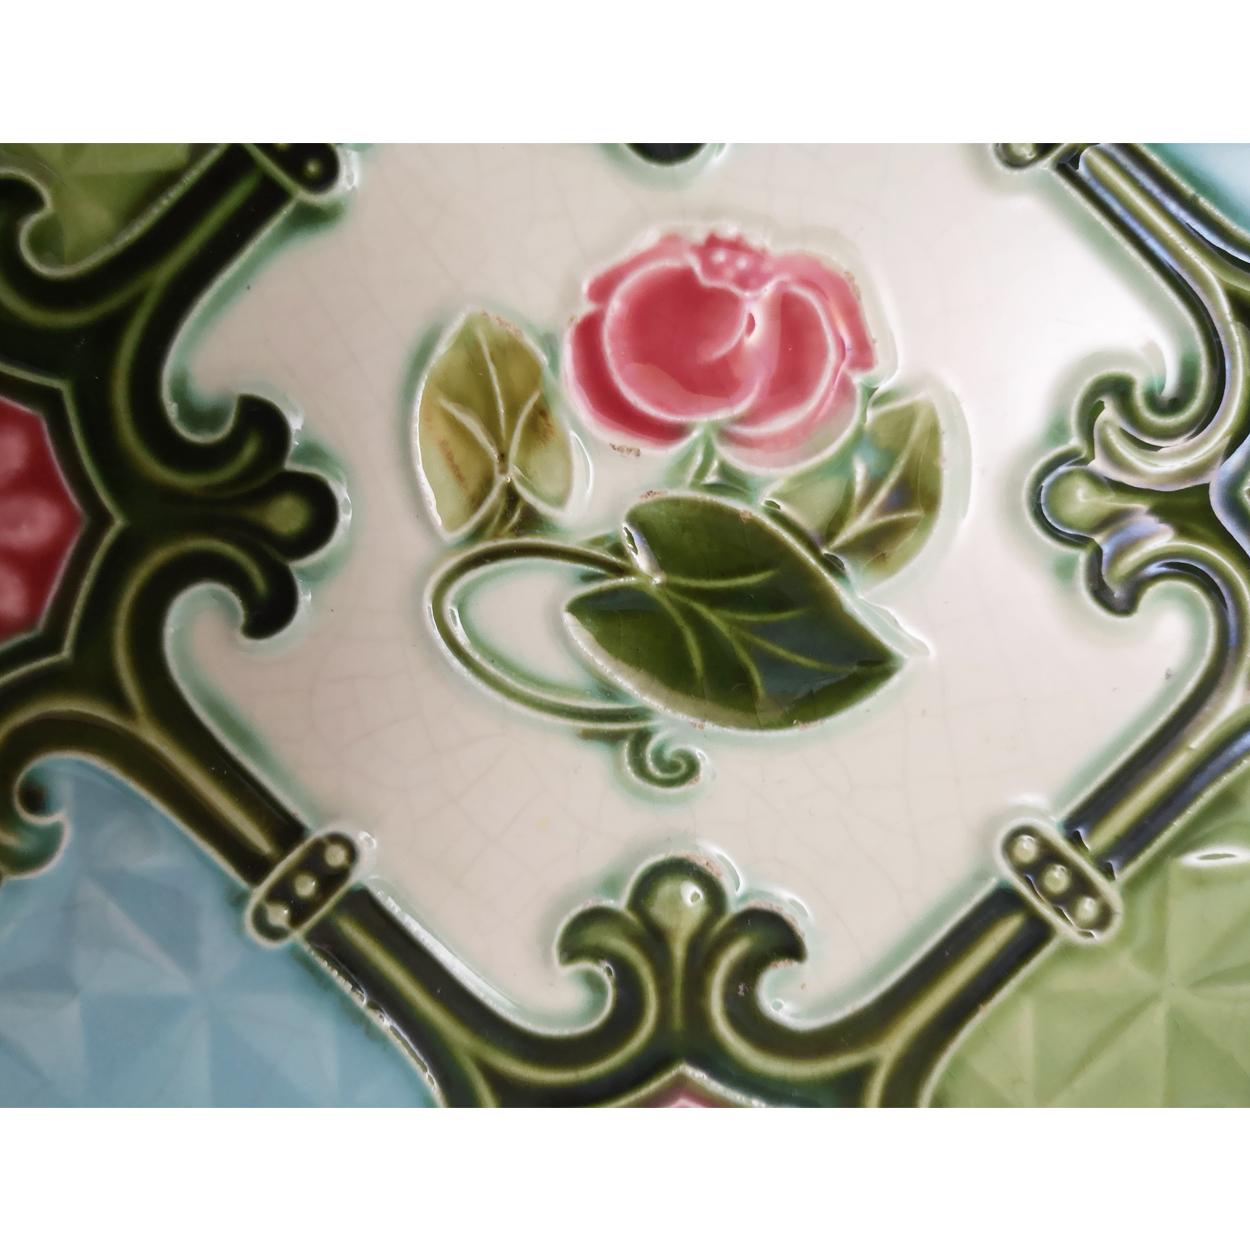 Ceramic 1 of the 24 Glazed Relief Tiles, S.A. Produits Ceramiques de la Dyle, 1930s